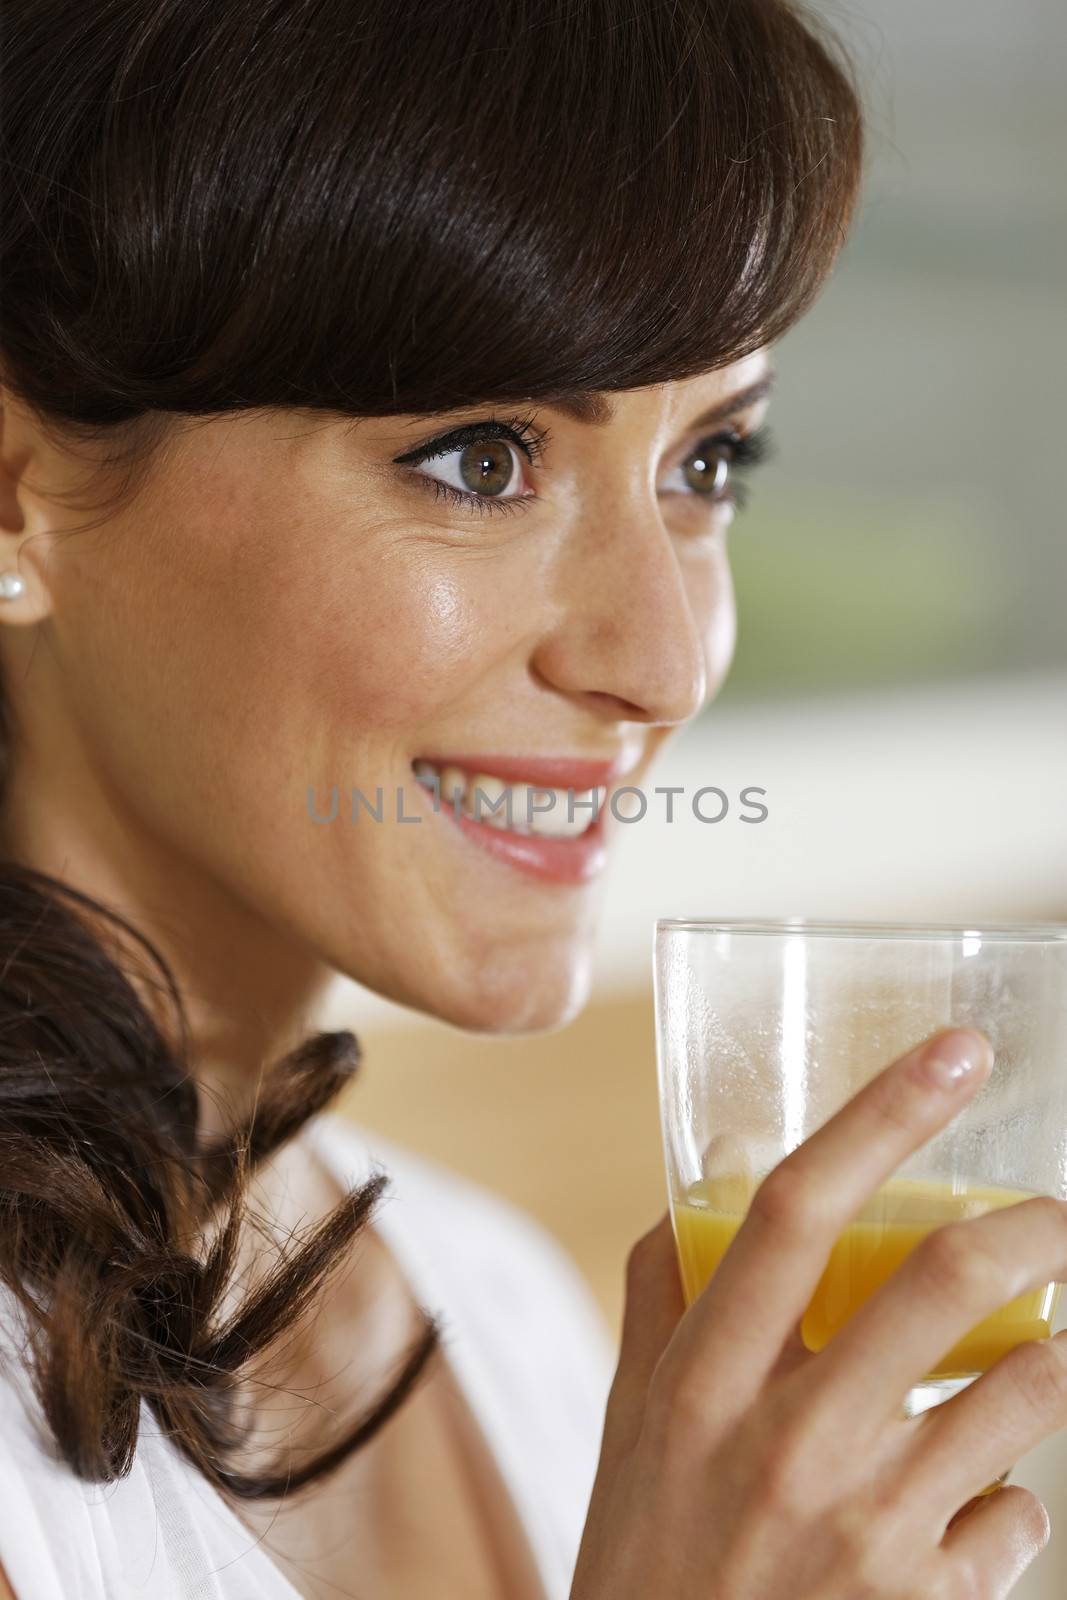 Beautiful young woman enjoying a glass of juice.